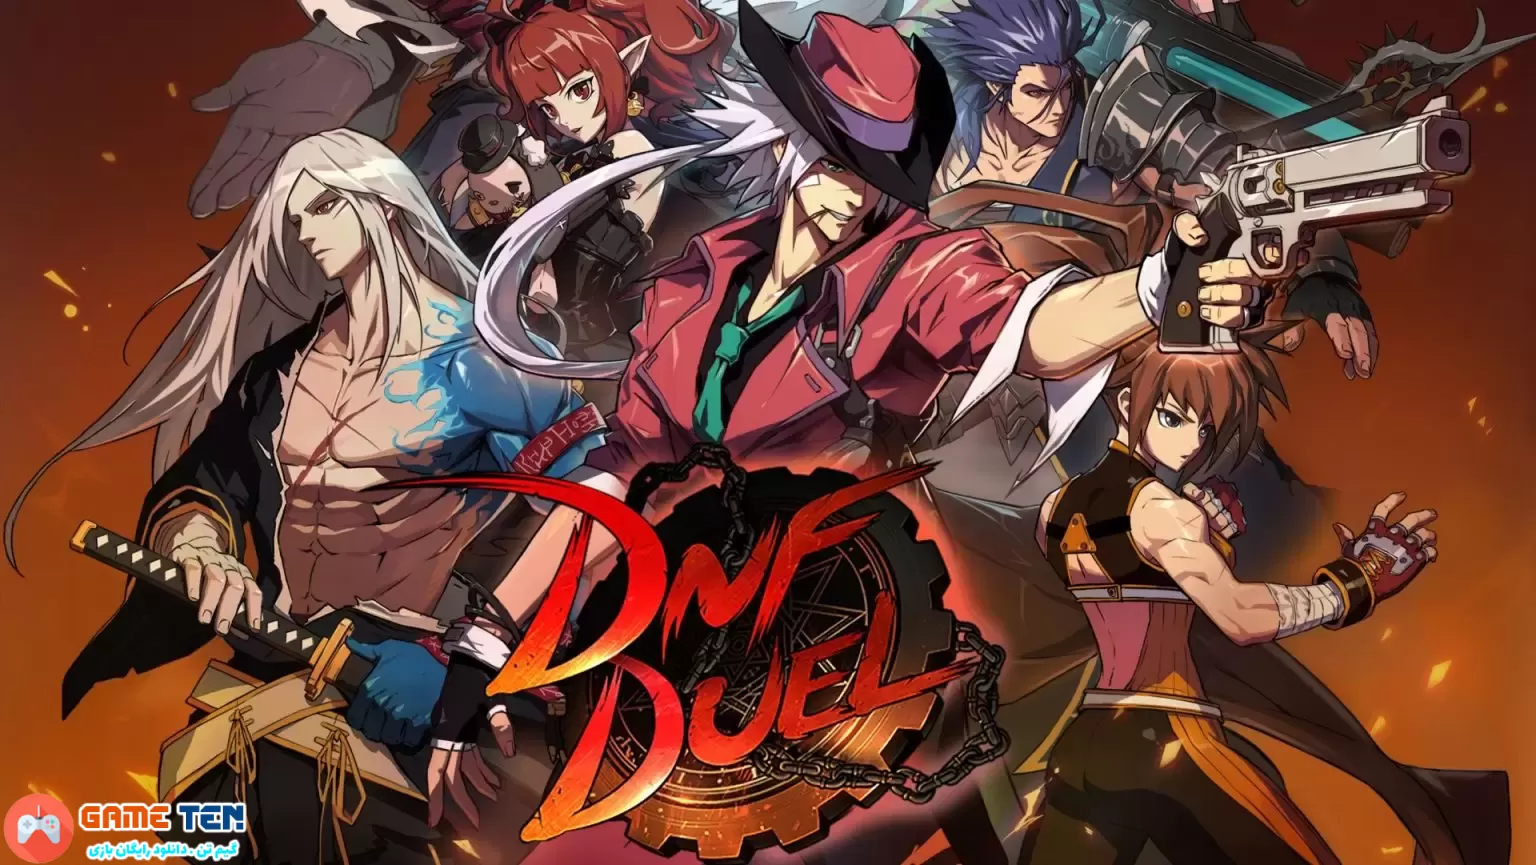 DNF Duel به صورت رایگان در فروشگاه Epic Games در دسترس است